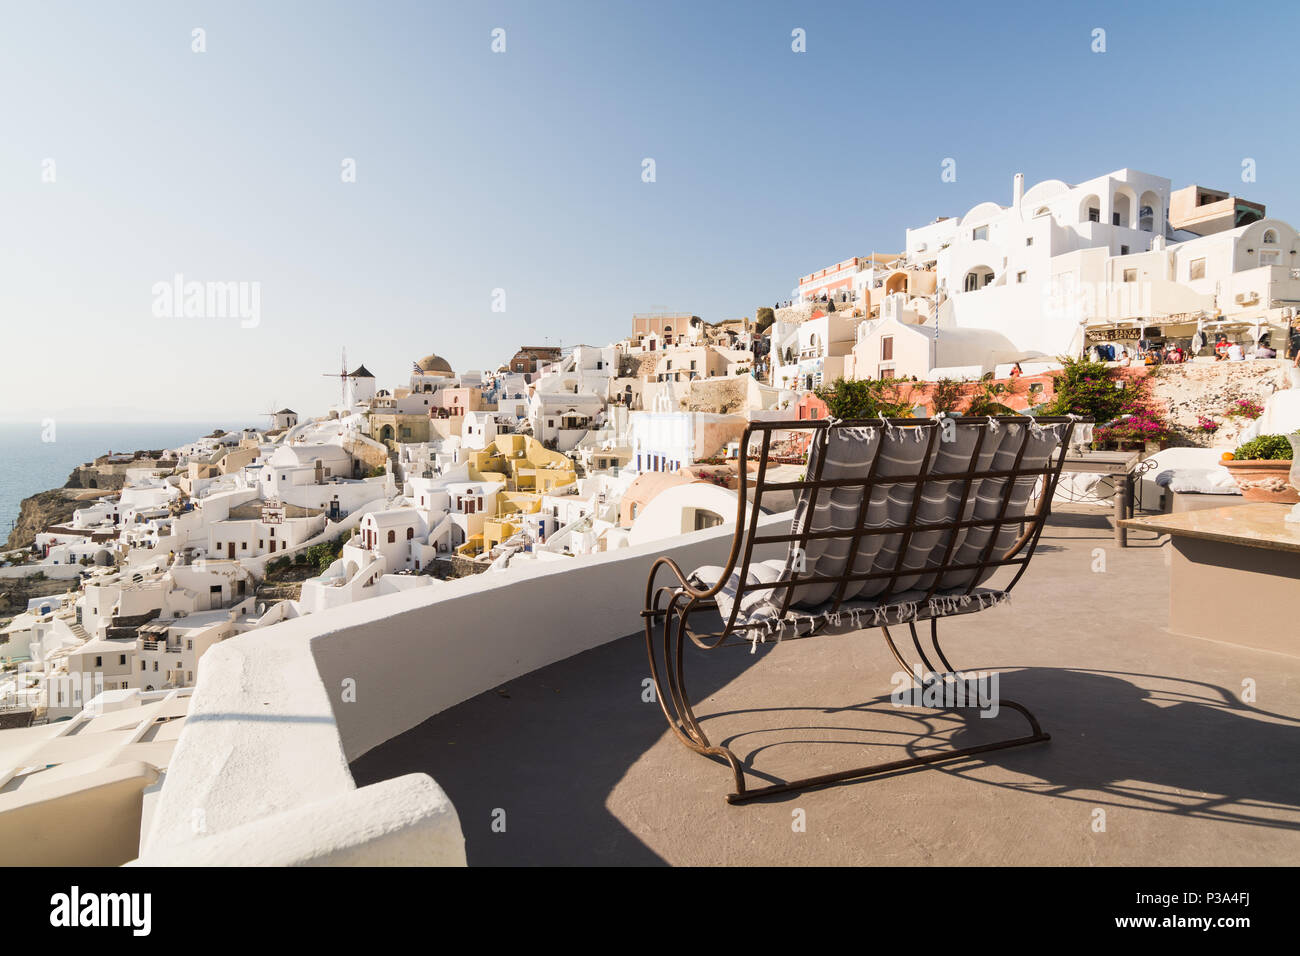 SANTORINI, Griechenland - Mai 2018: Iconic Panoramablick über das Dorf Oia auf Santorini, Griechenland. Schaukelstuhl im Vordergrund. Stockfoto